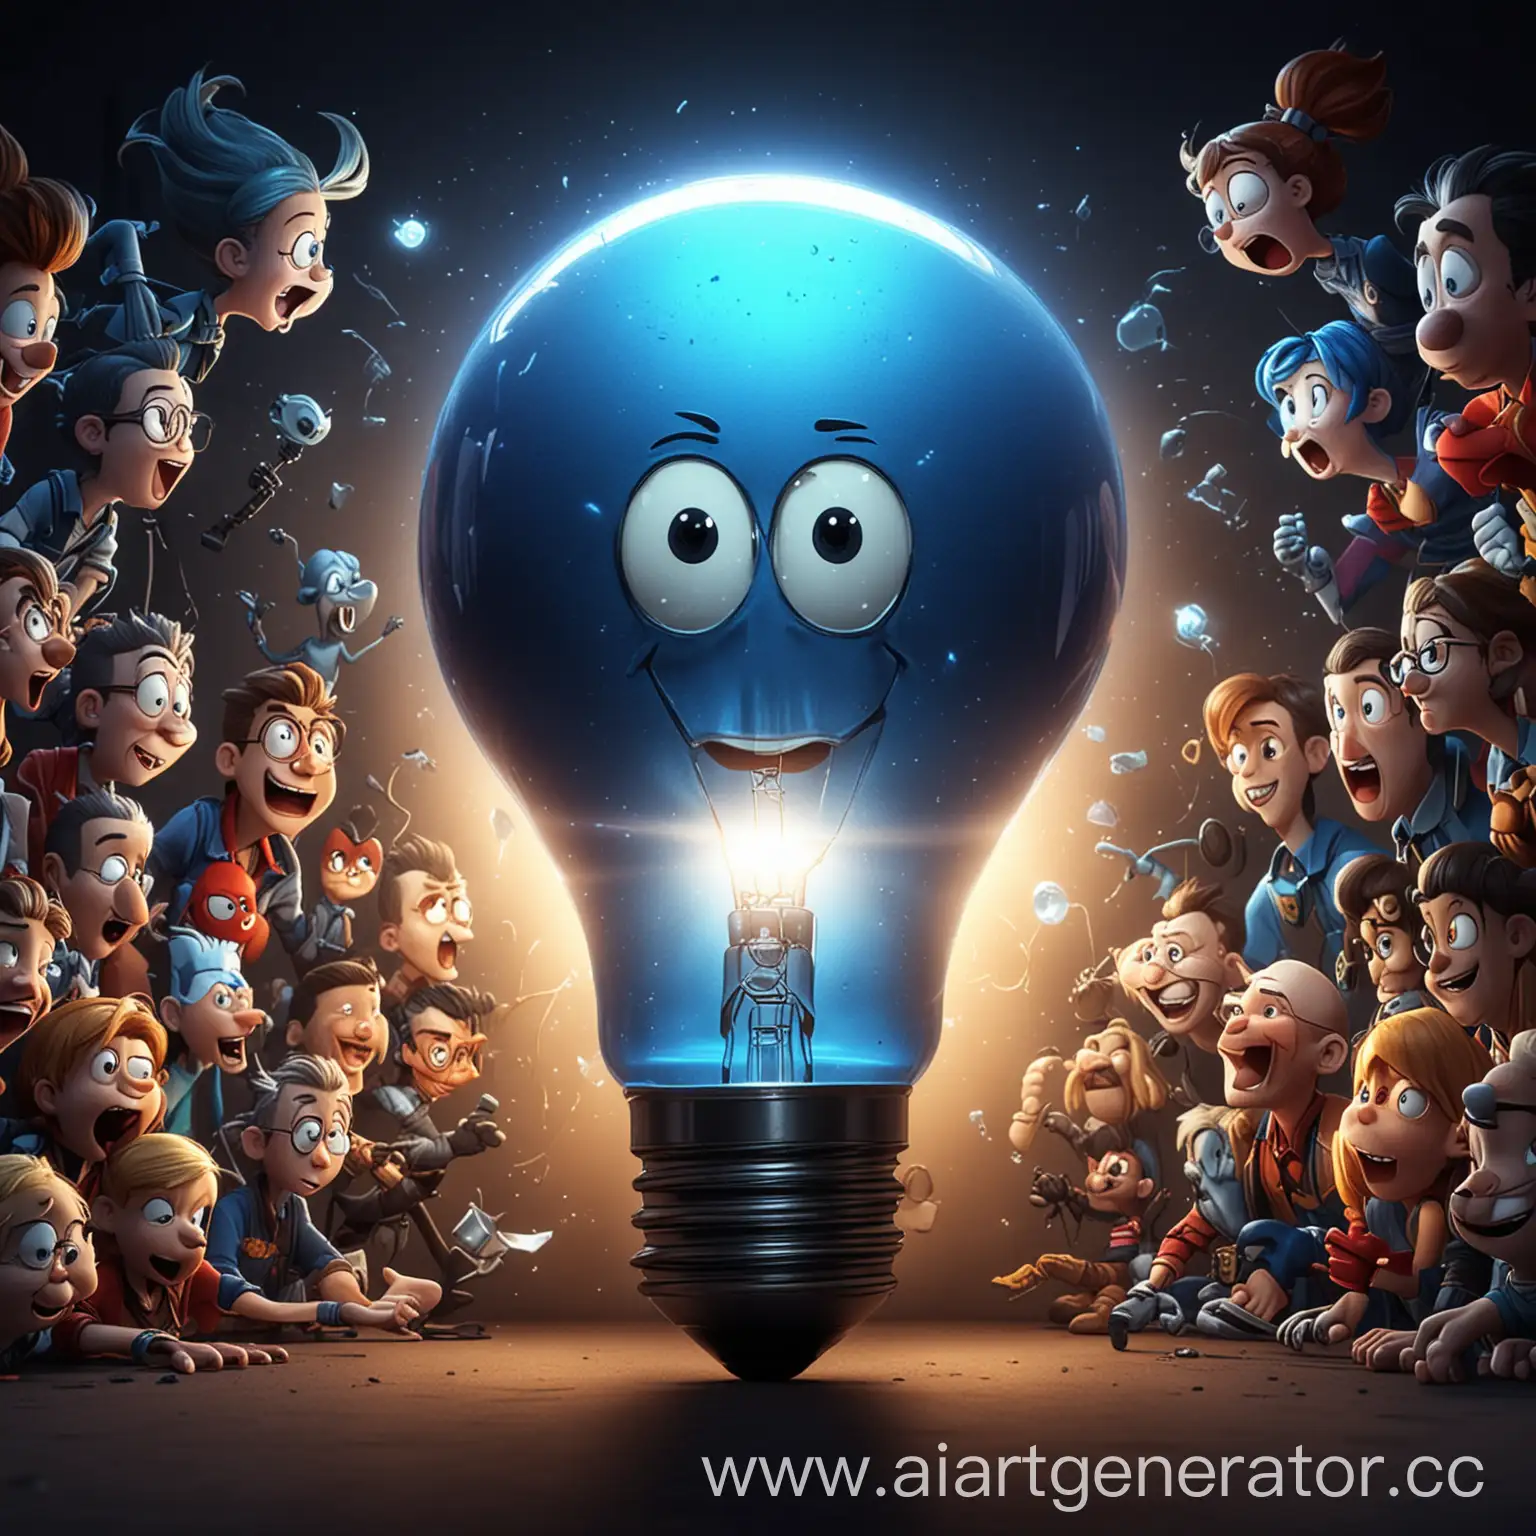 баннер на канал ютуб, где изображена лампочка синего цвета и из него всплеском вылезают герои мультфильмов в 4К